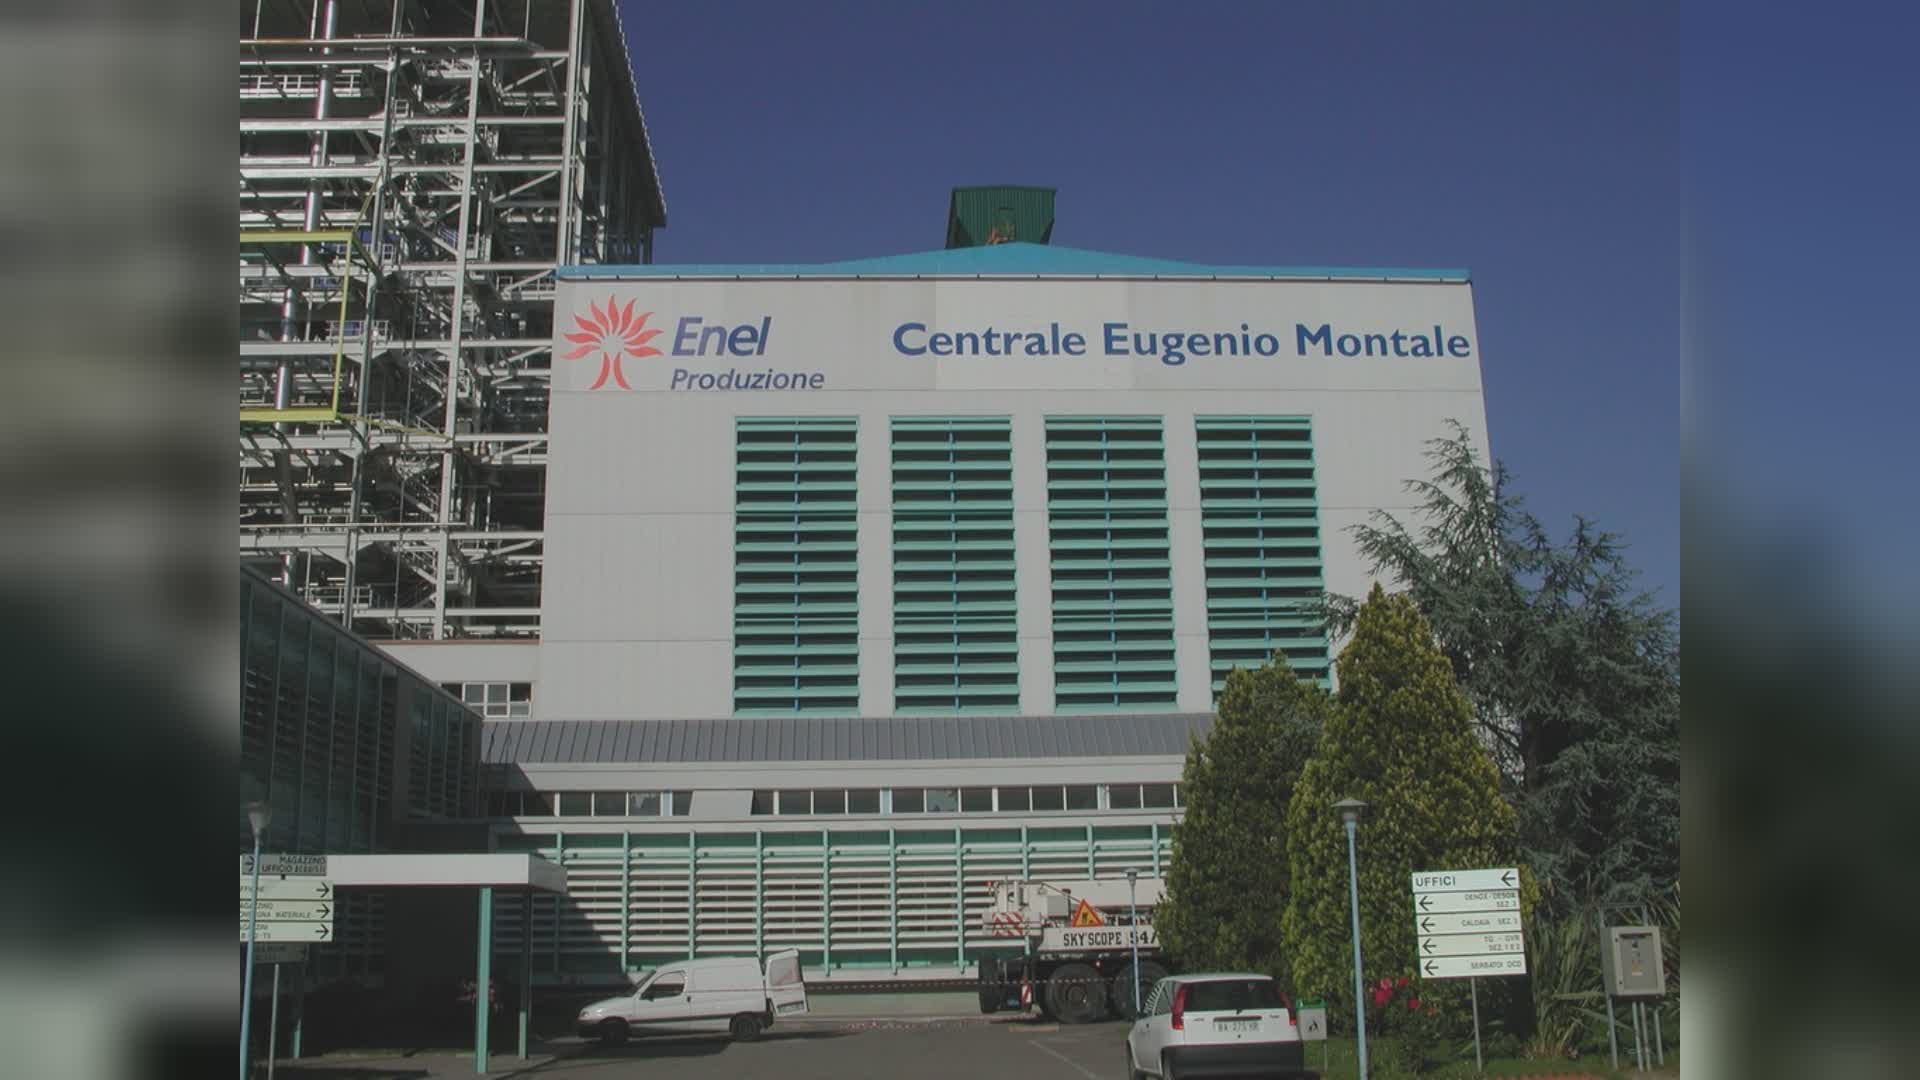 La Spezia, dismissione centrale Enel, Confindustria: "Serve chiarezza sul destino dell'area"